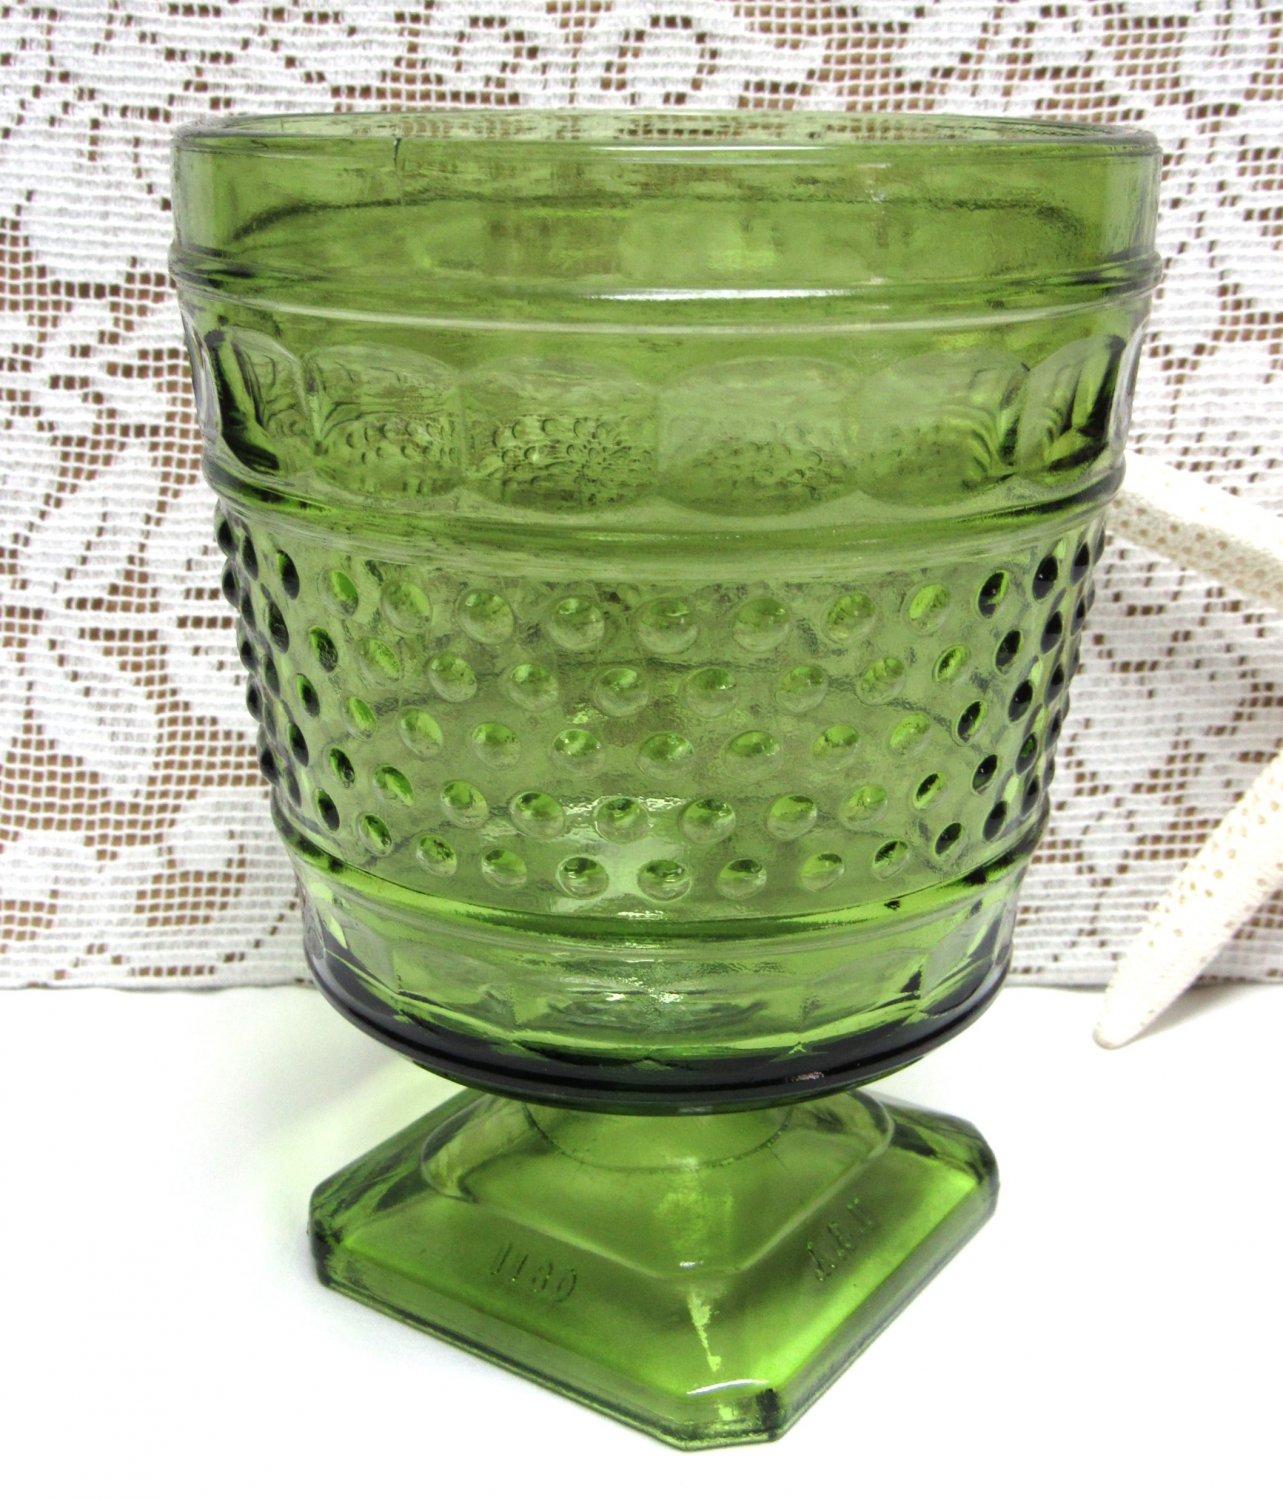 Vintage NAPCO Green GLASS Planter USA Hobnail Pedestal Goblet Candy Dish Vase 0811